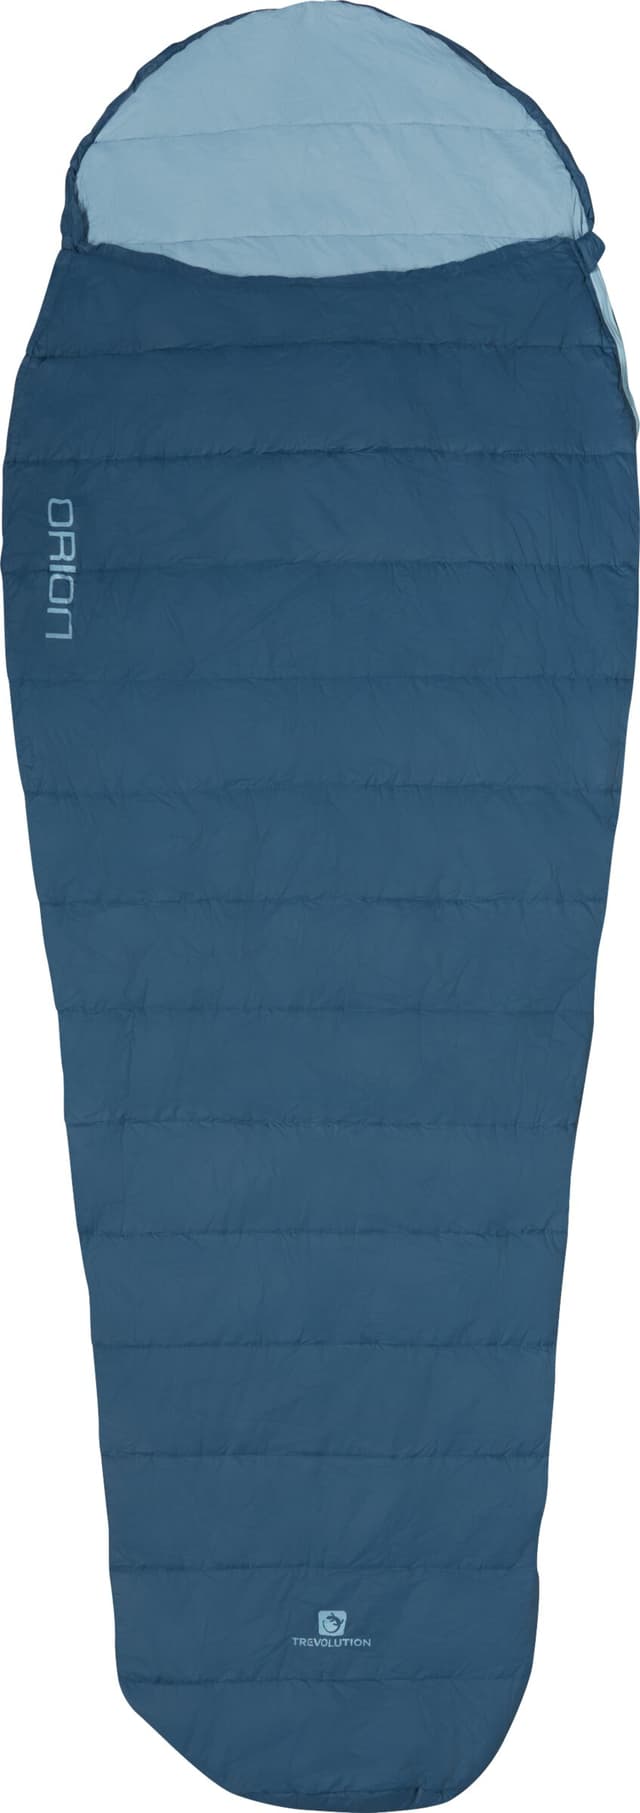 trevolution Orion Sac de couchage en fibres synthétiques bleu